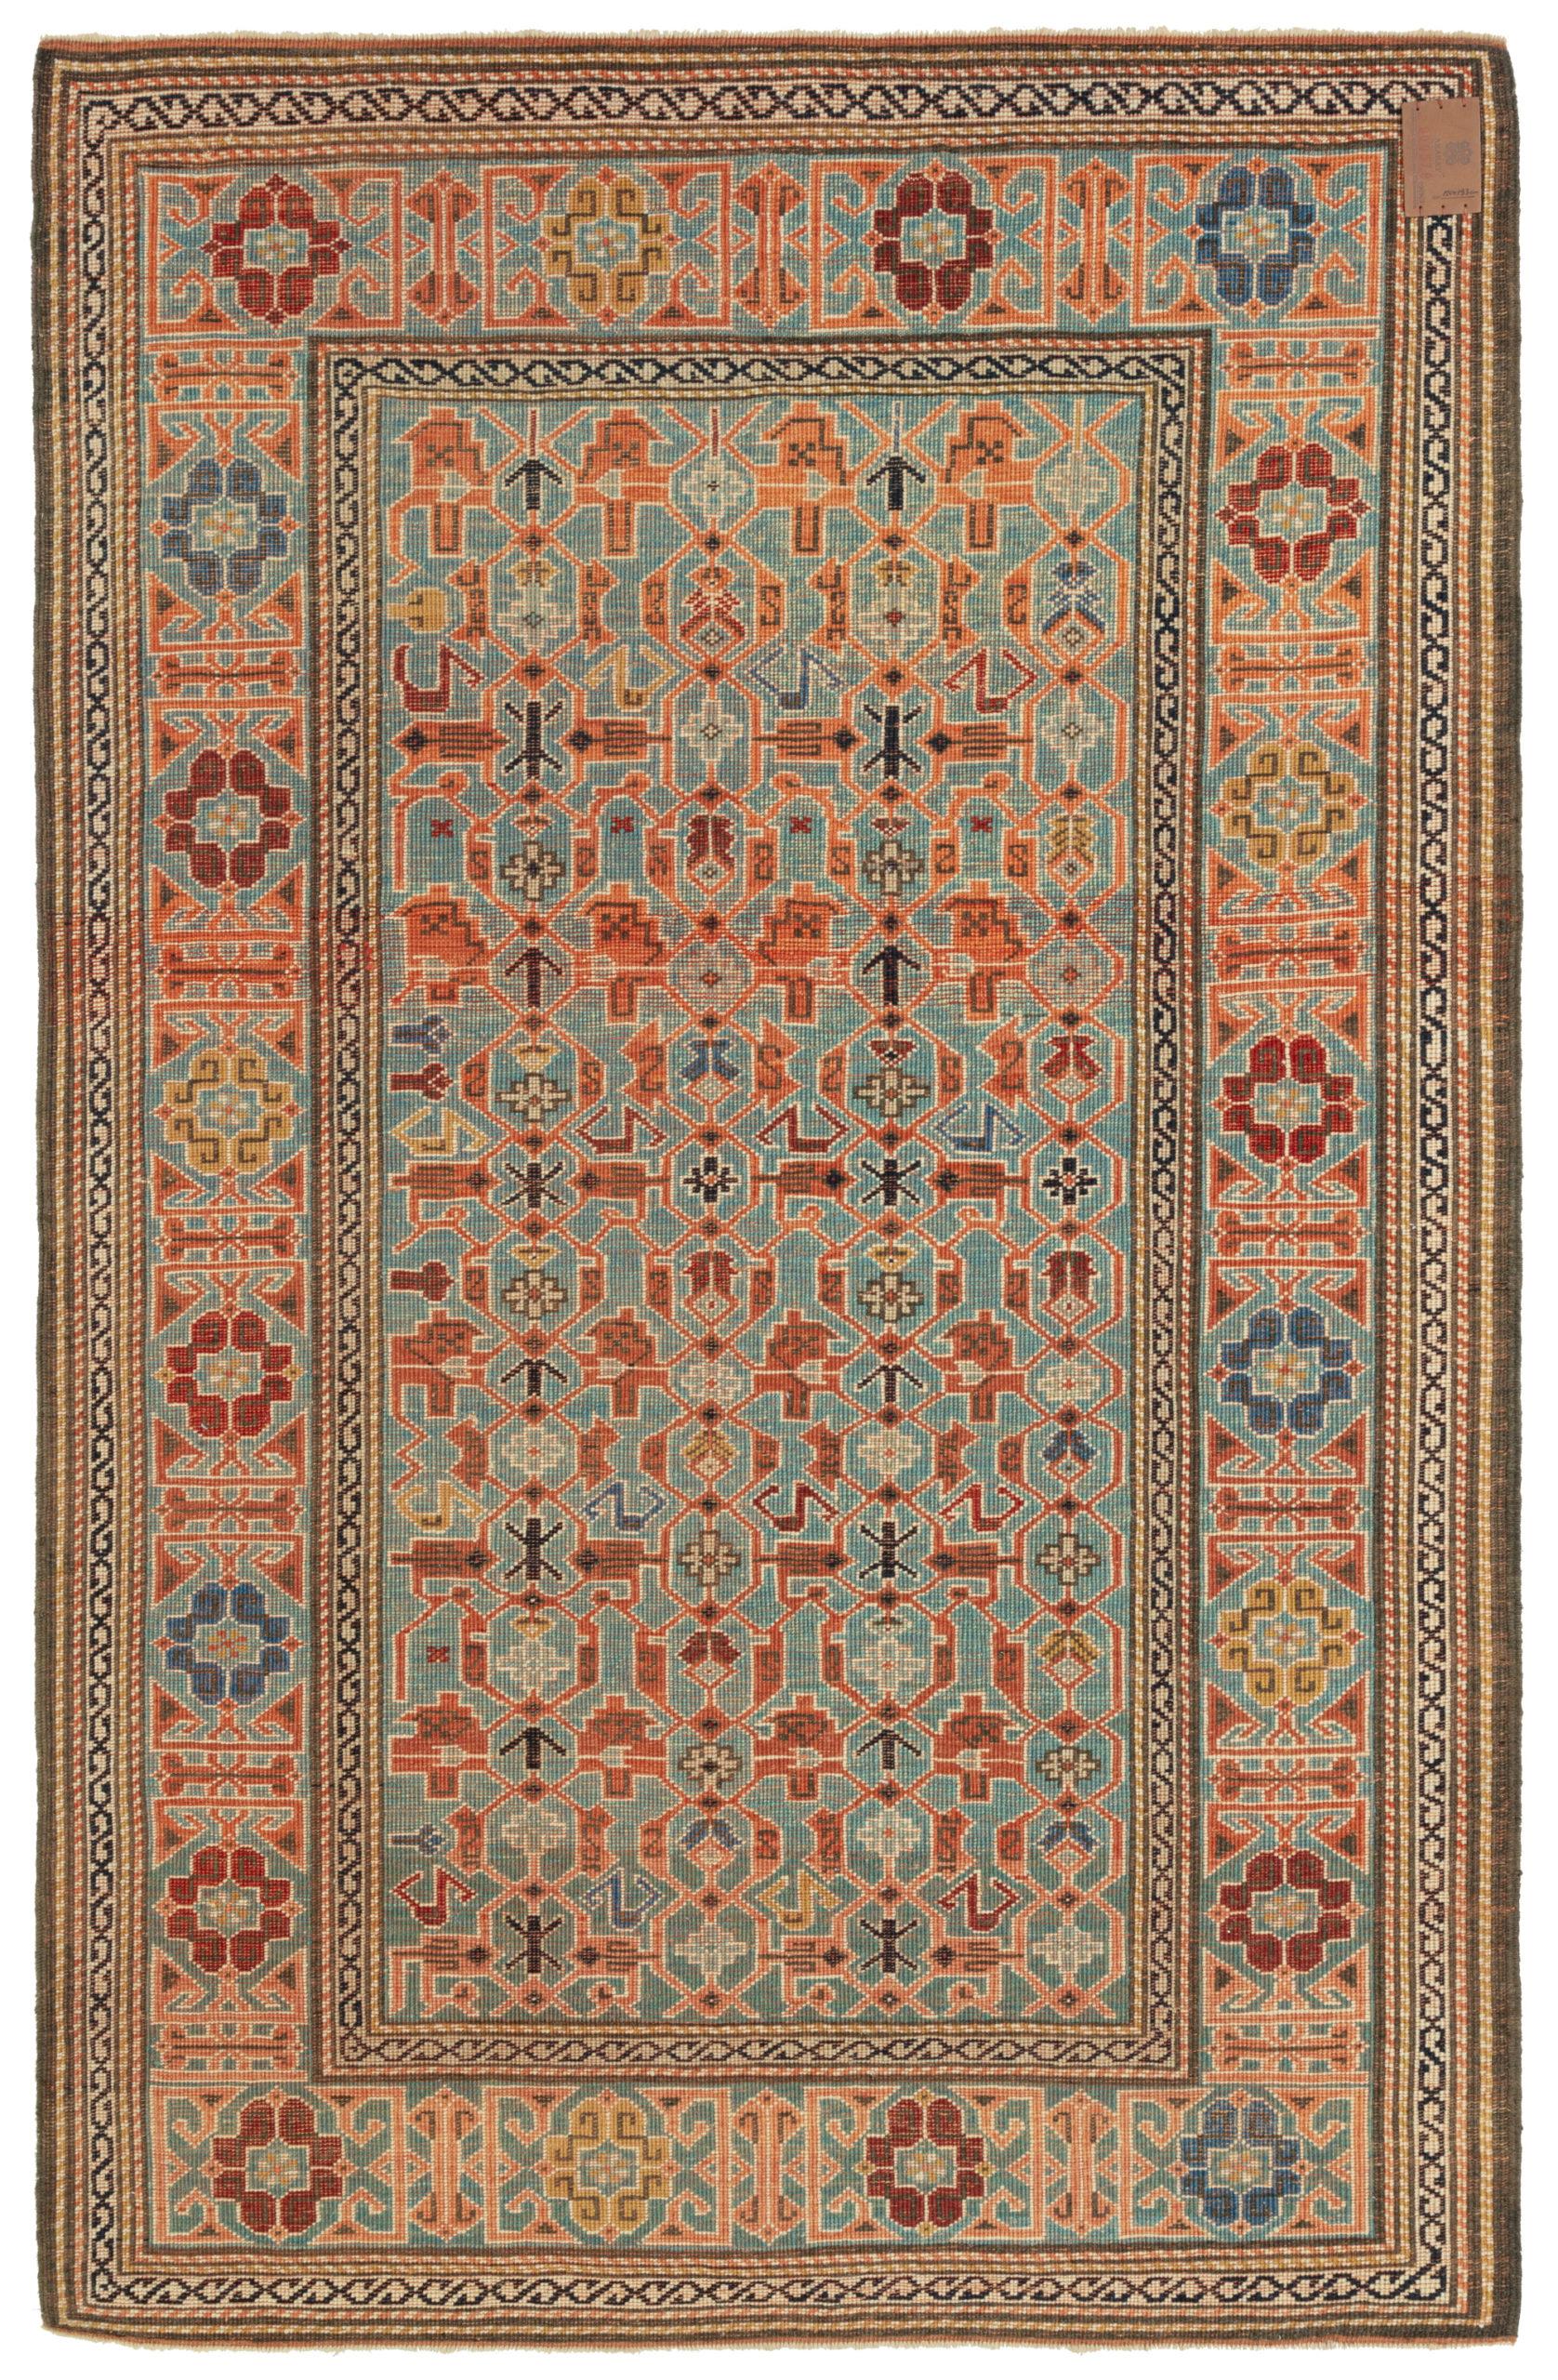 Die Designquelle des Teppichs stammt aus dem Buch How to Read - Islamic Carpets, Walter B. Denny, The Metropolitan Museum of Art, New York 2014 fig.87. Dies ist ein Hausteppich, ein Dorfteppich und eine Nomadenweberei aus dem späten 19. Jahrhundert